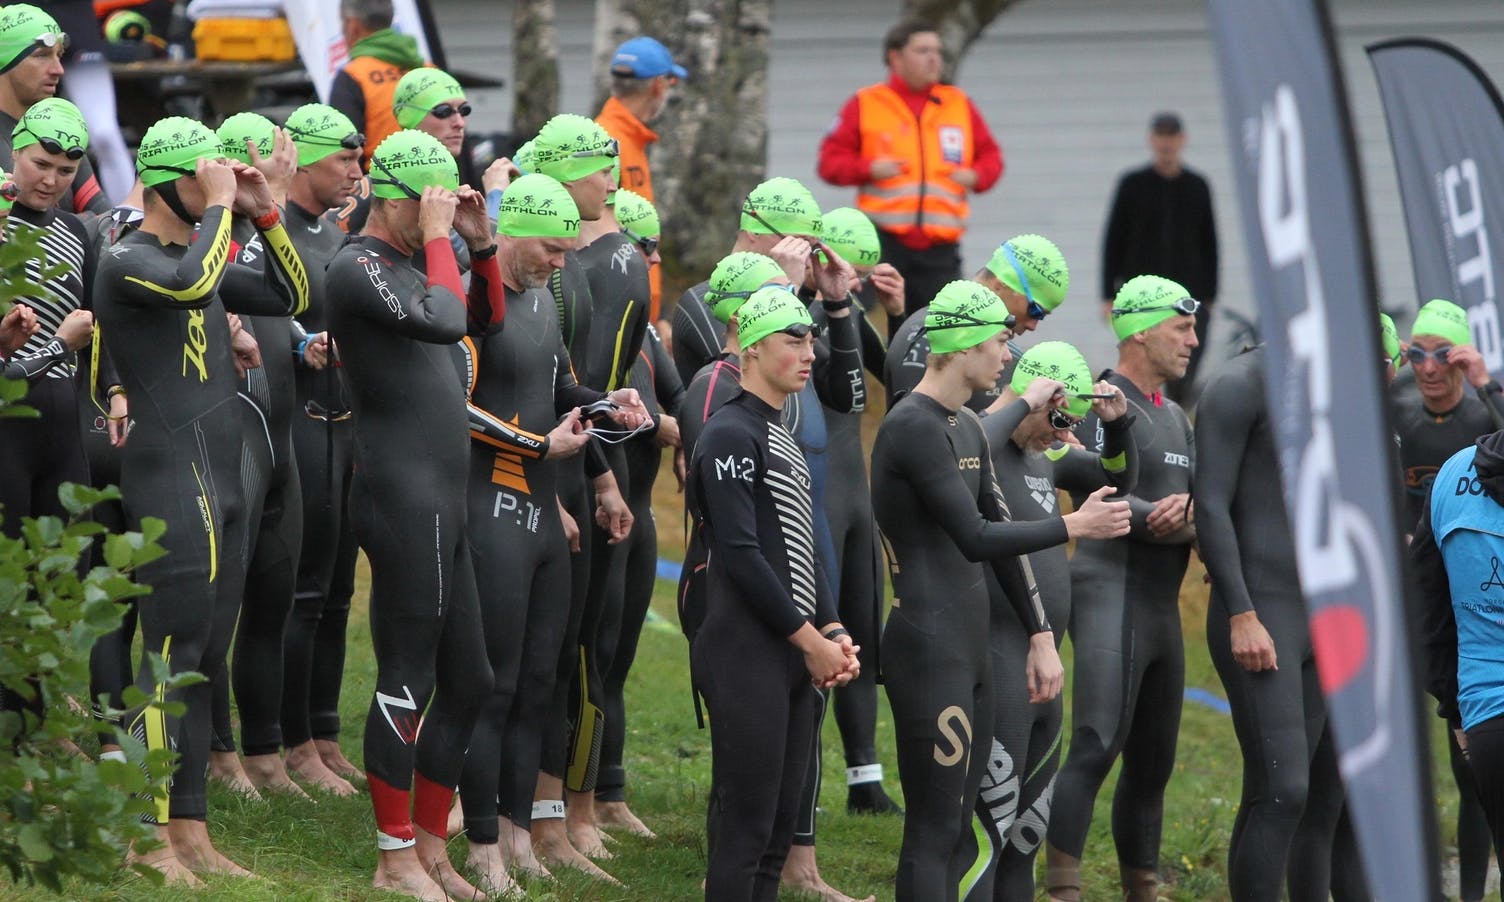 Open klasse/mosjonsklassen fekk grøne badehetter. Os Triathlon 2021. (Foto: Ørjan Håland)